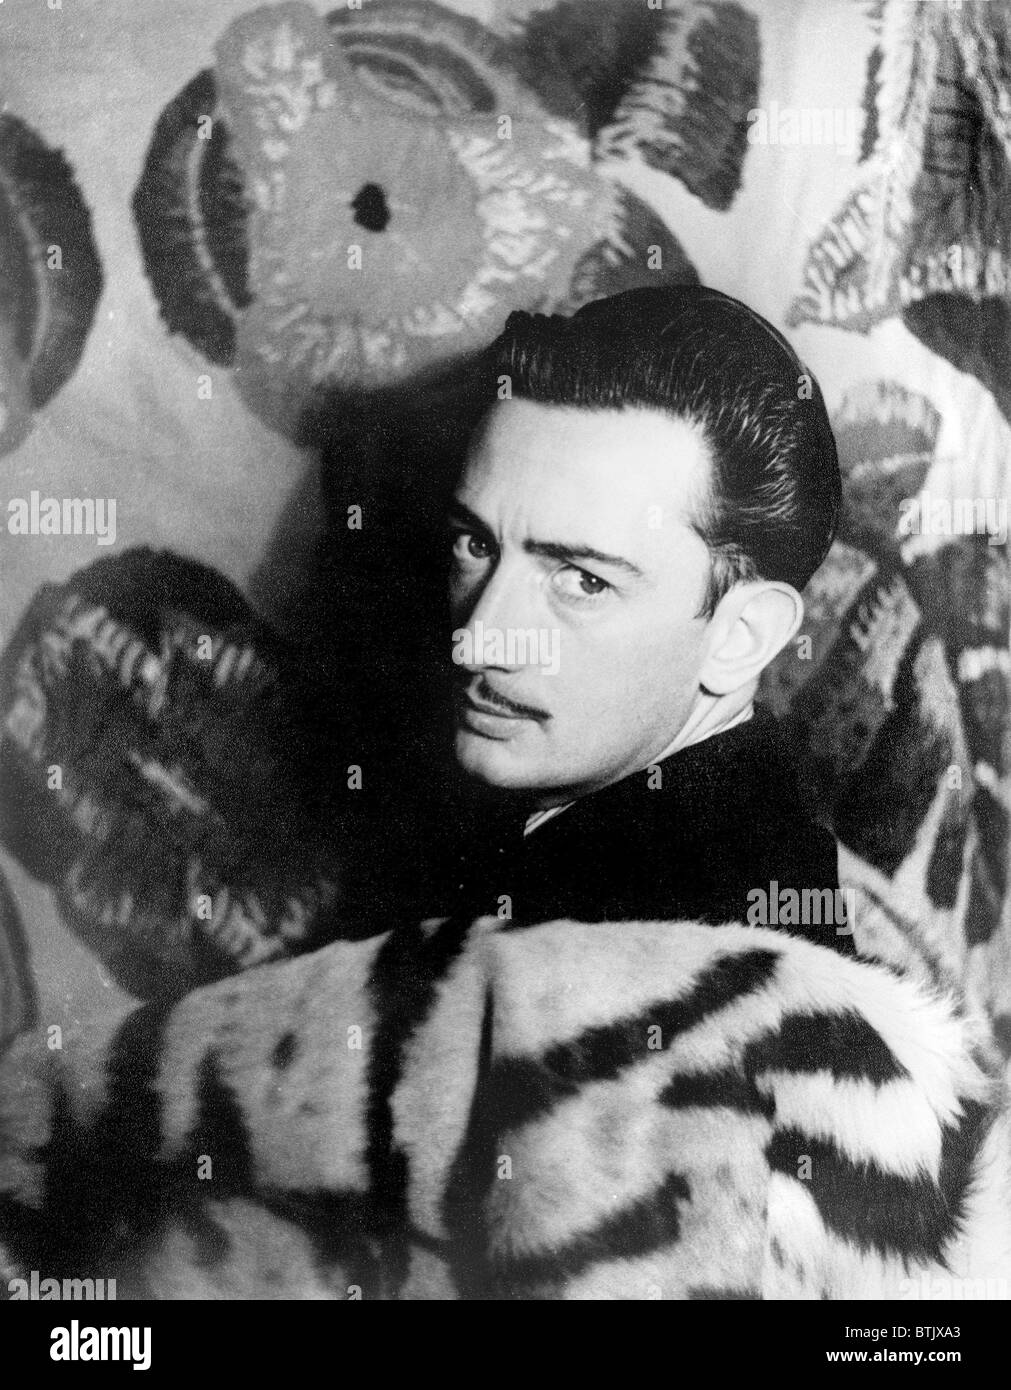 Salvador Dali (1910-2001), peintre surréaliste espagnol, photo de Carl Van Vechten, le 29 novembre 1939. Banque D'Images